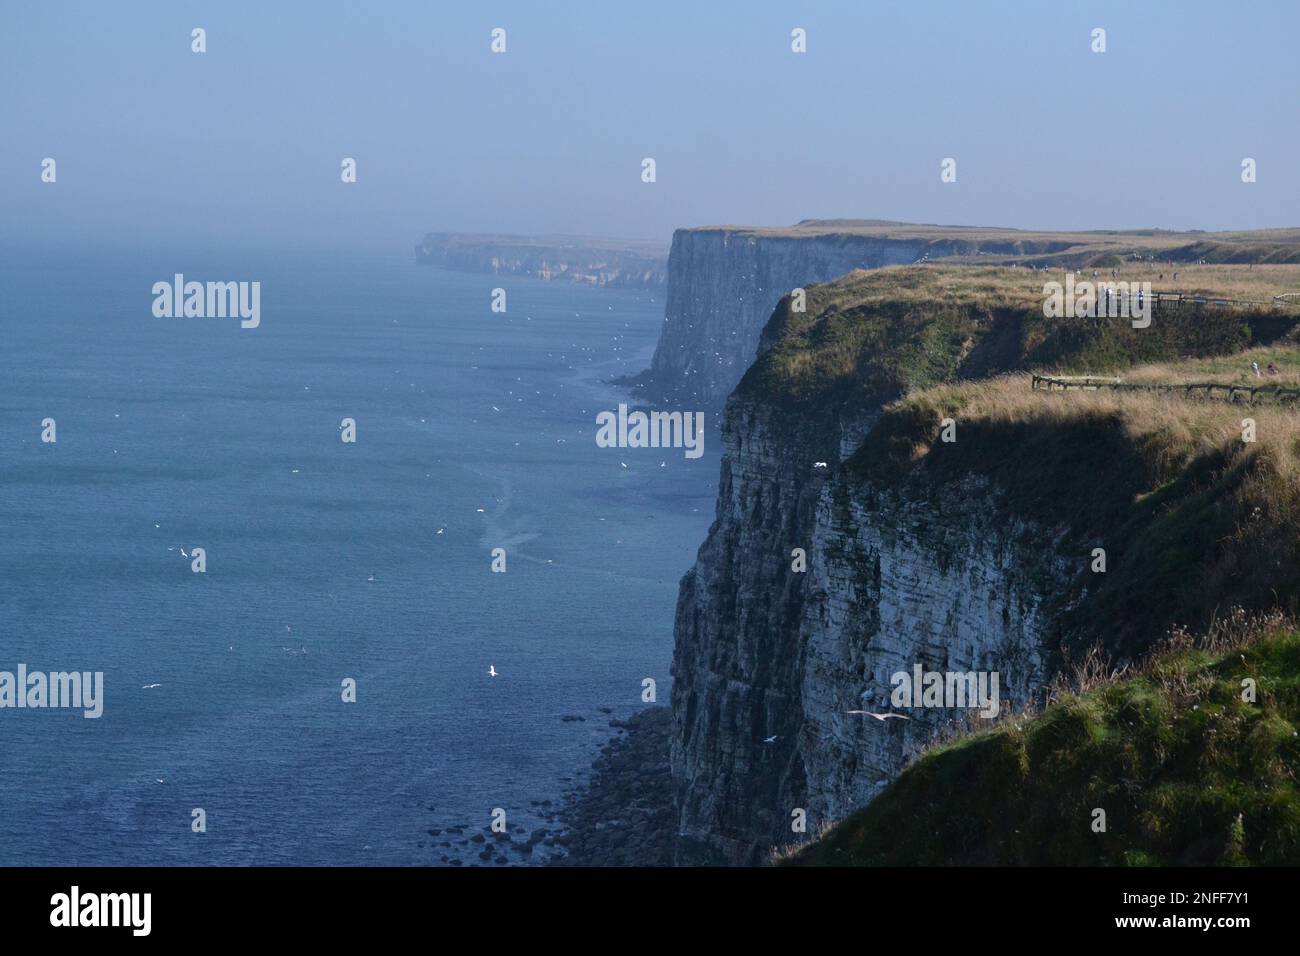 Bempton Cliffs - RSPB - Weiße Klippen und Nordsee an einem sonnigen Tag - Seabird Colony - Land und Meer - Yorkshire - Großbritannien Stockfoto